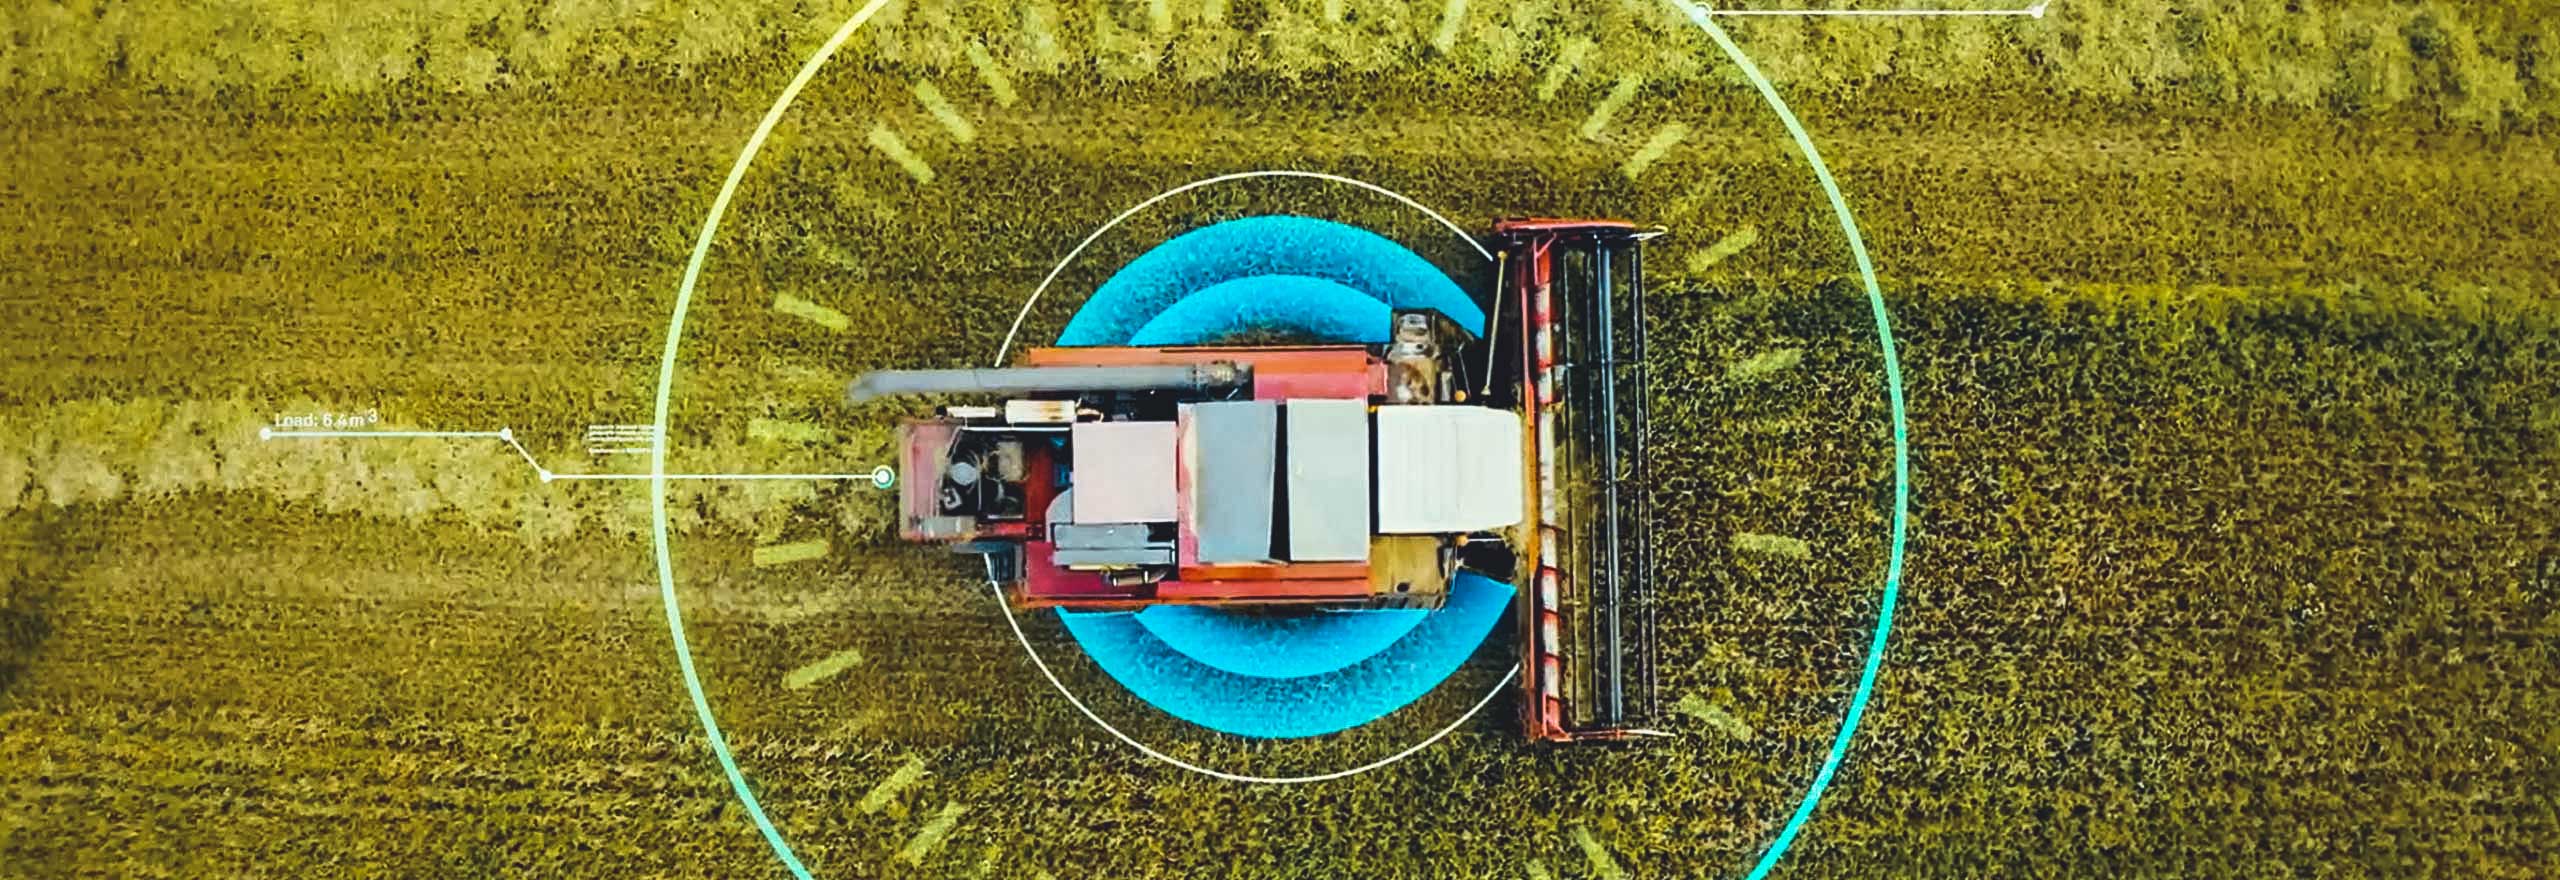 Ein Bild eines Traktors auf einem Feld, überlagert mit digitalen Elementen, die Smart Farming darstellen